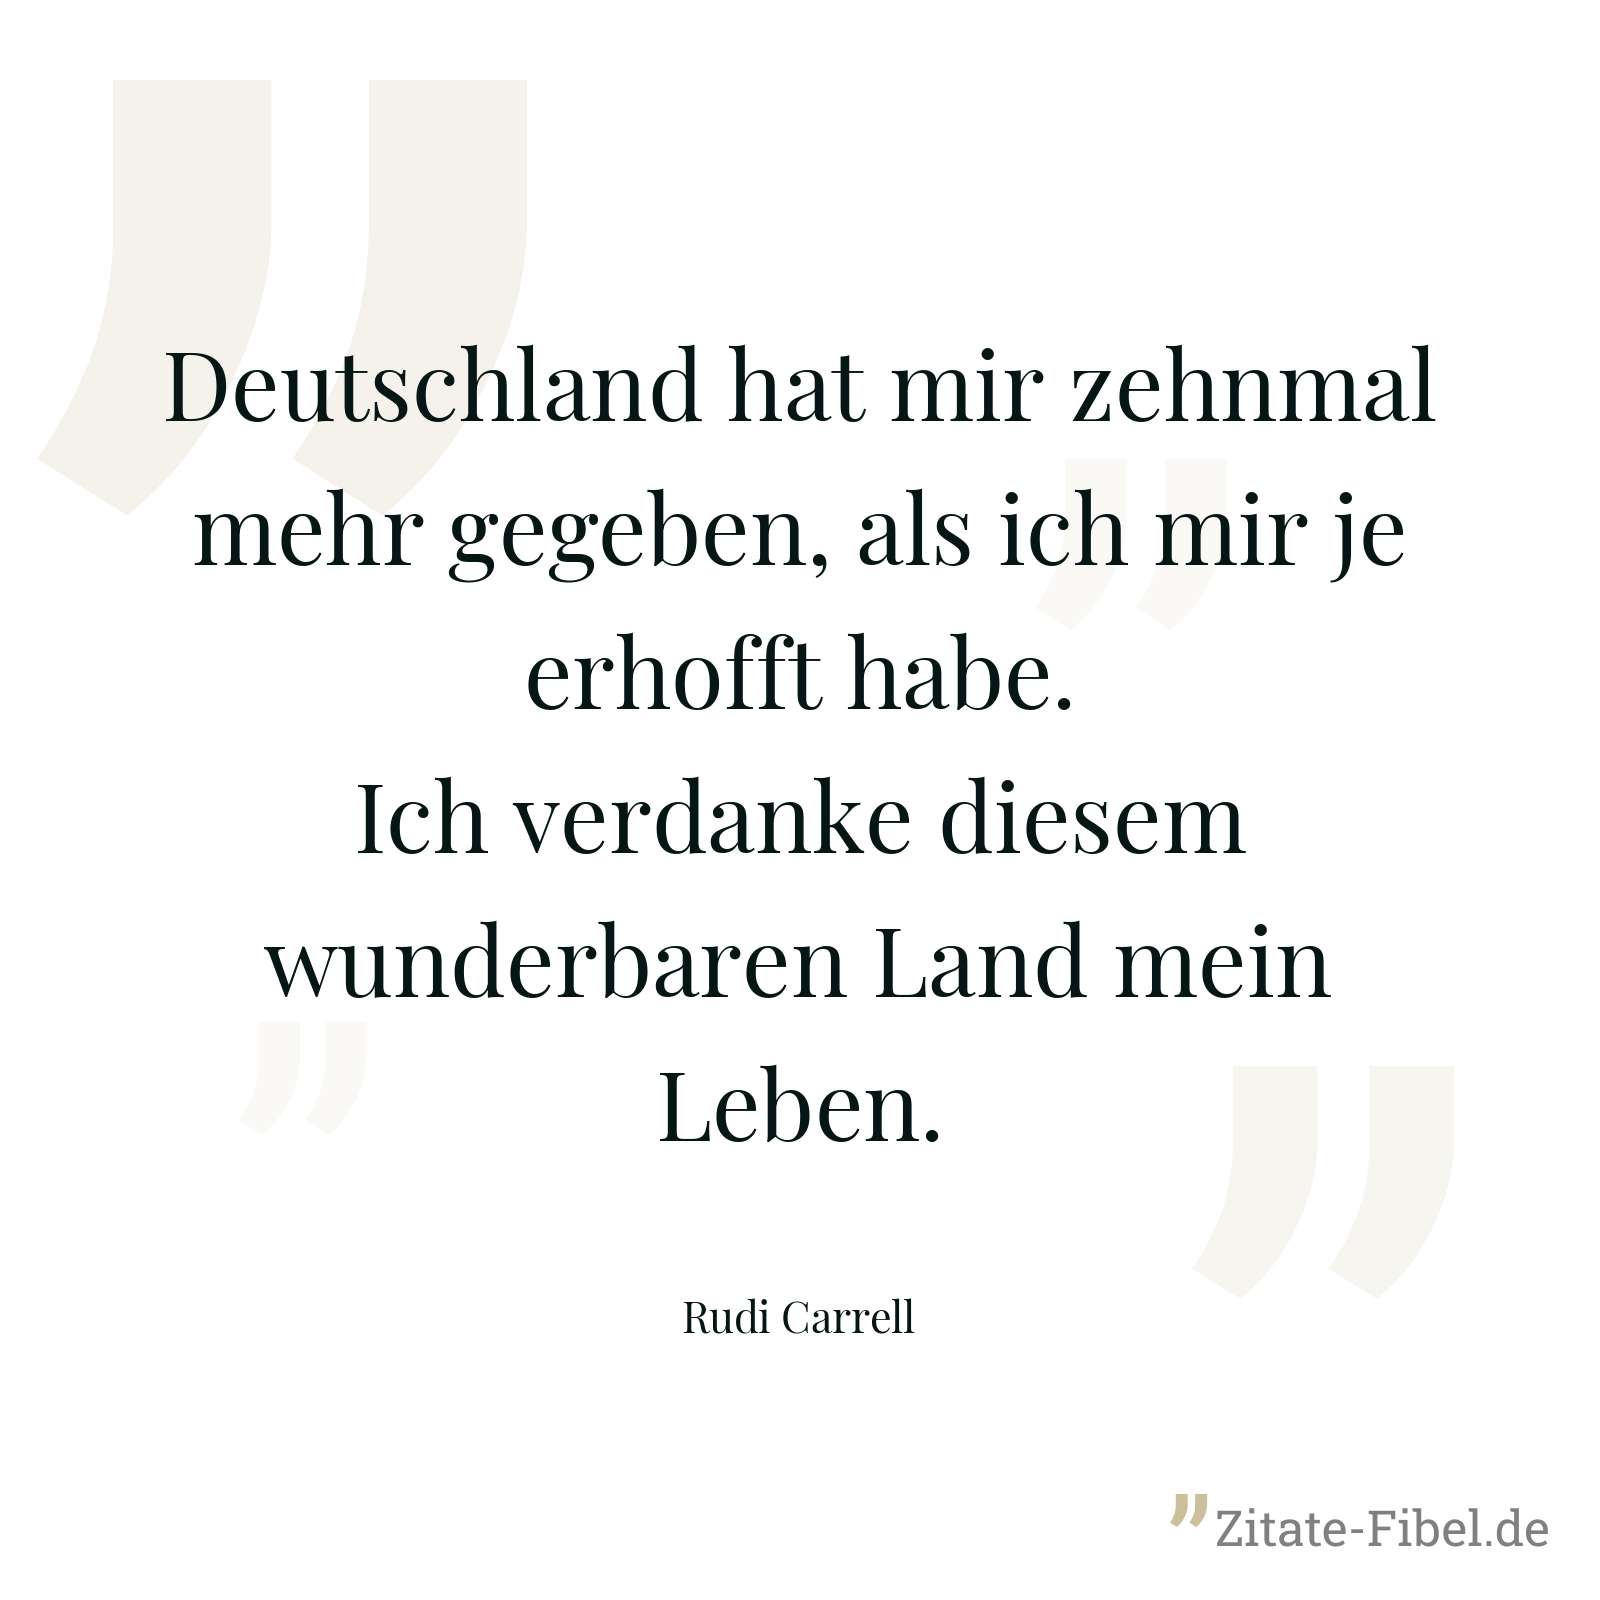 Deutschland hat mir zehnmal mehr gegeben, als ich mir je erhofft habe. Ich verdanke diesem wunderbaren Land mein Leben. - Rudi Carrell